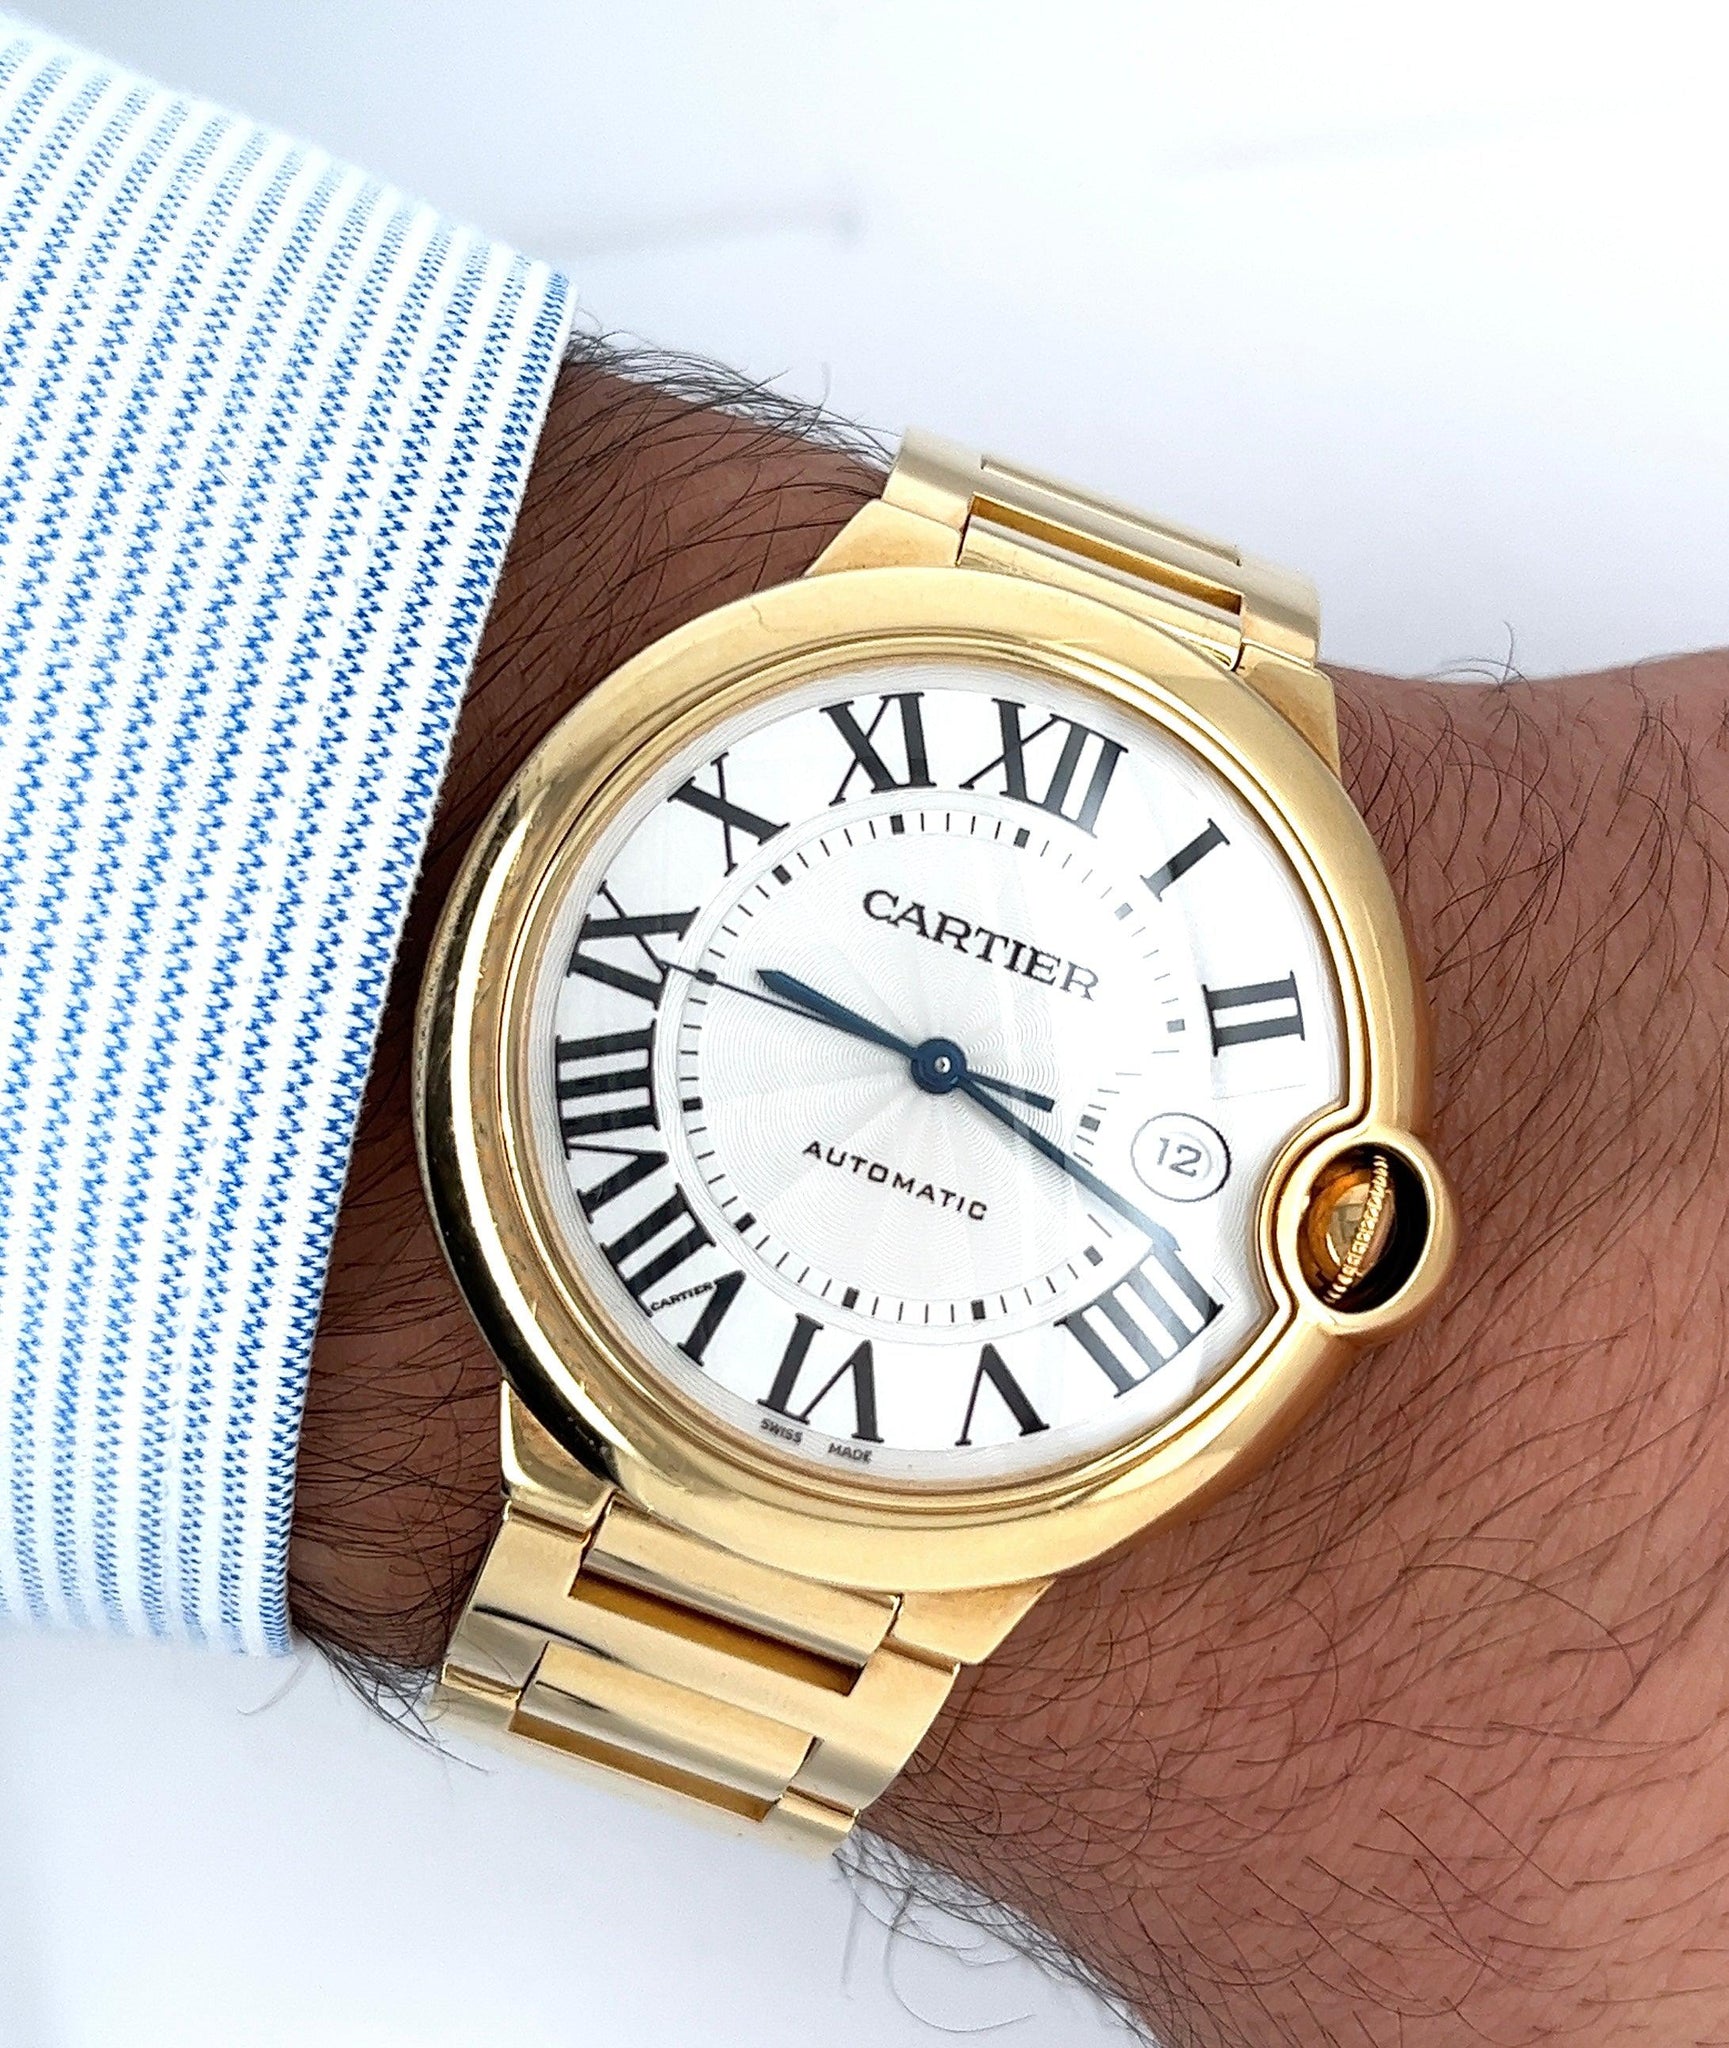 Ballon Bleu de Cartier Automatic 33mm 18-karat rose gold and diamond watch